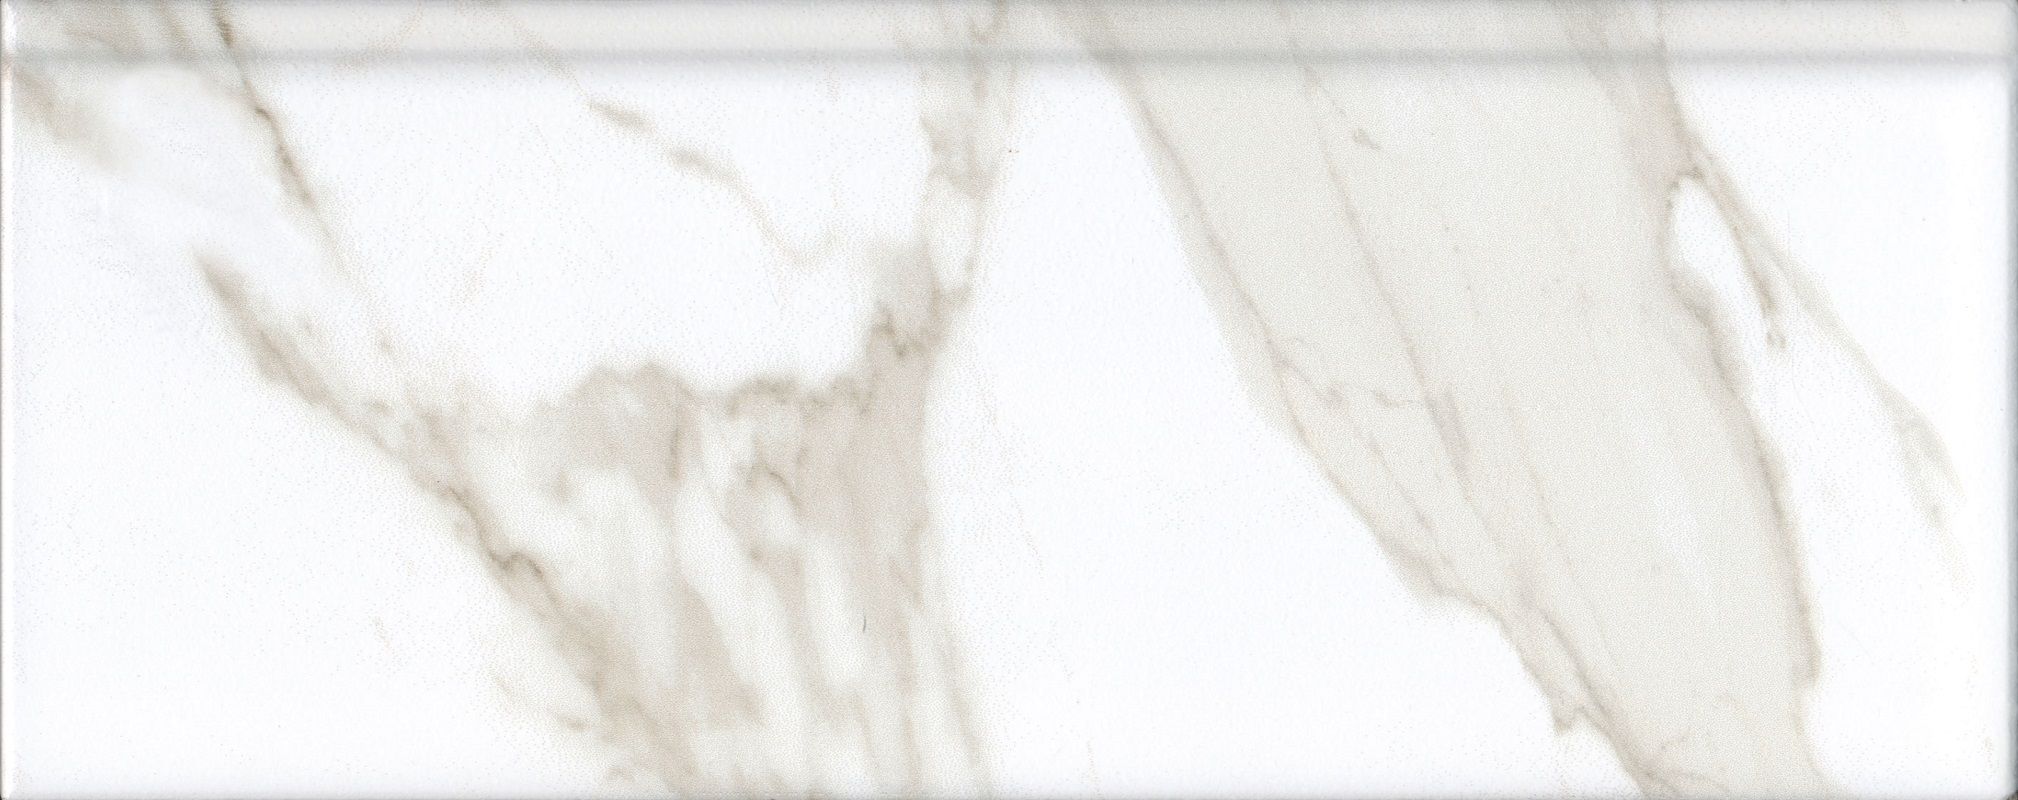 Плинтус керамический Kerama Marazzi Алентежу белый матовый обрезной 30x12 см, в упак 9 штук керамический плинтус kerama marazzi марсо беж обрезной fma018r 15х30 см